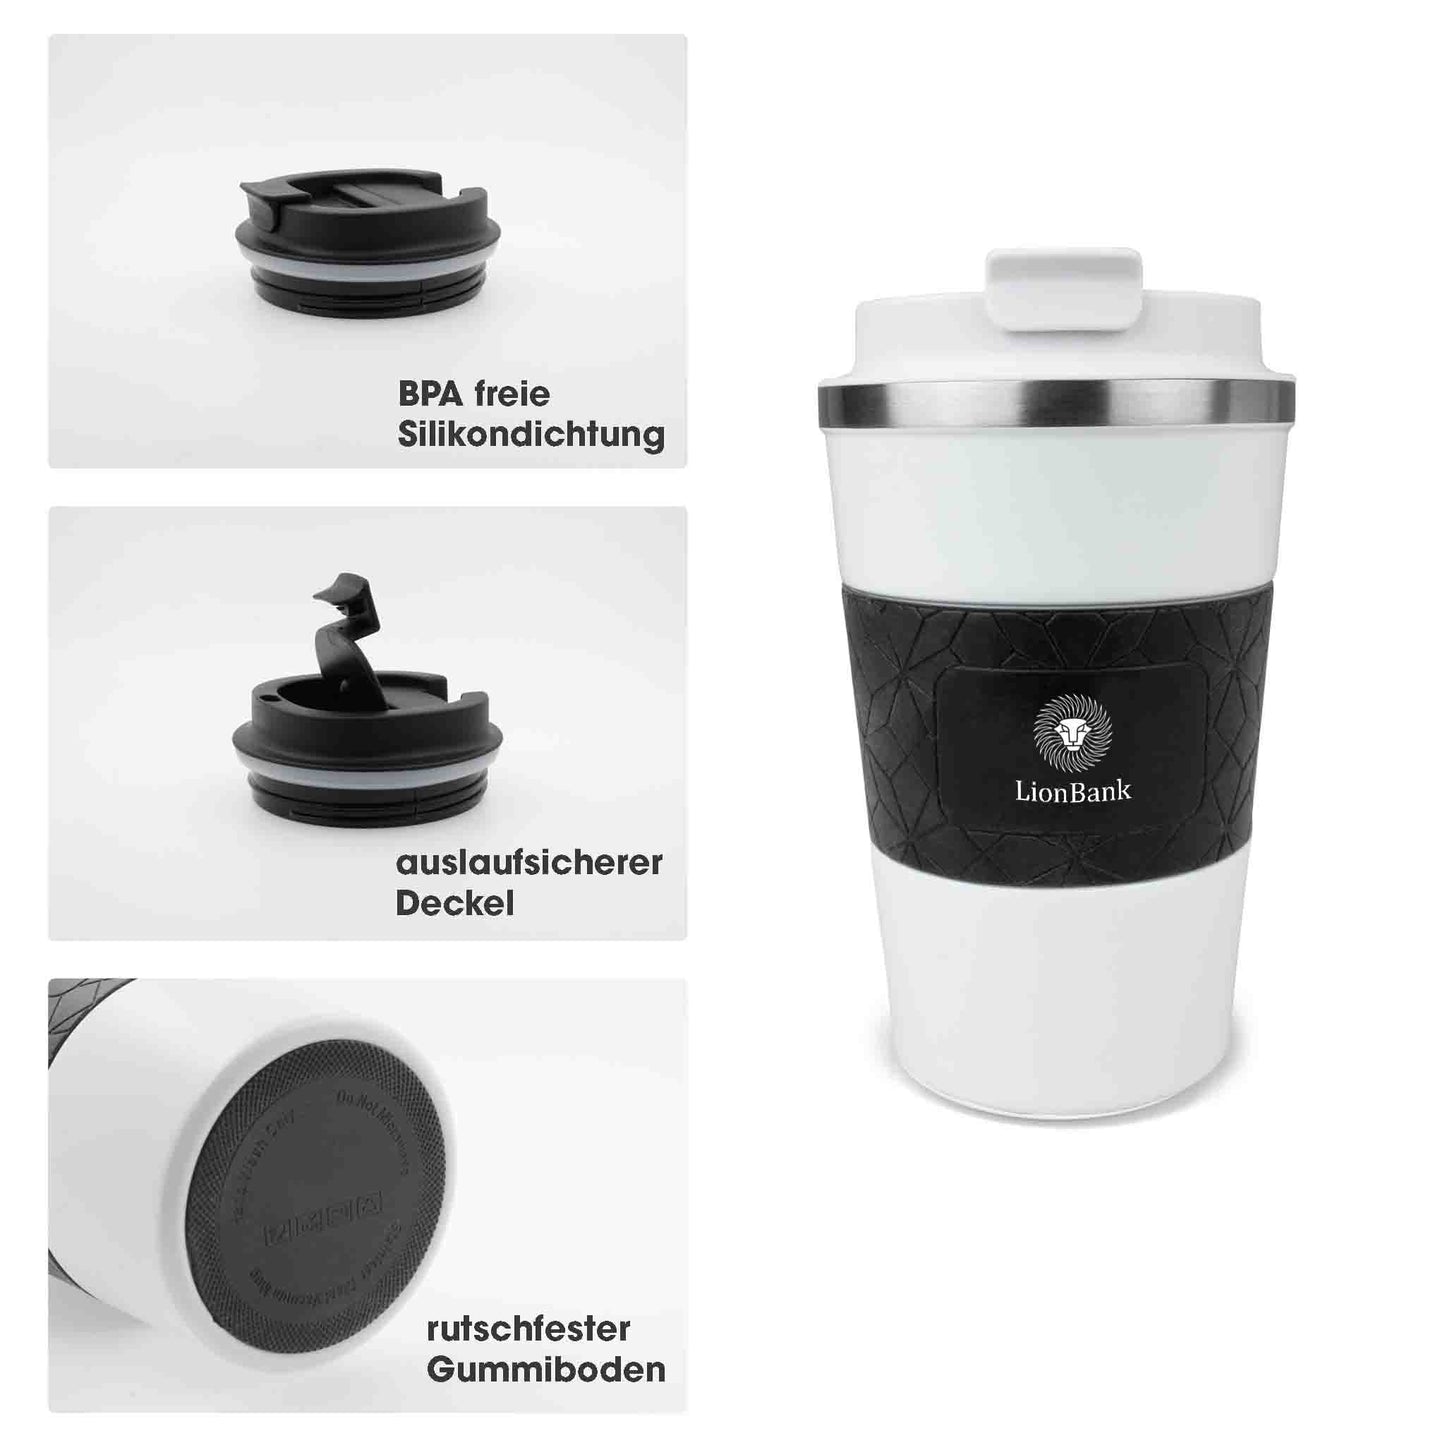 MagCup "style" thermo mug